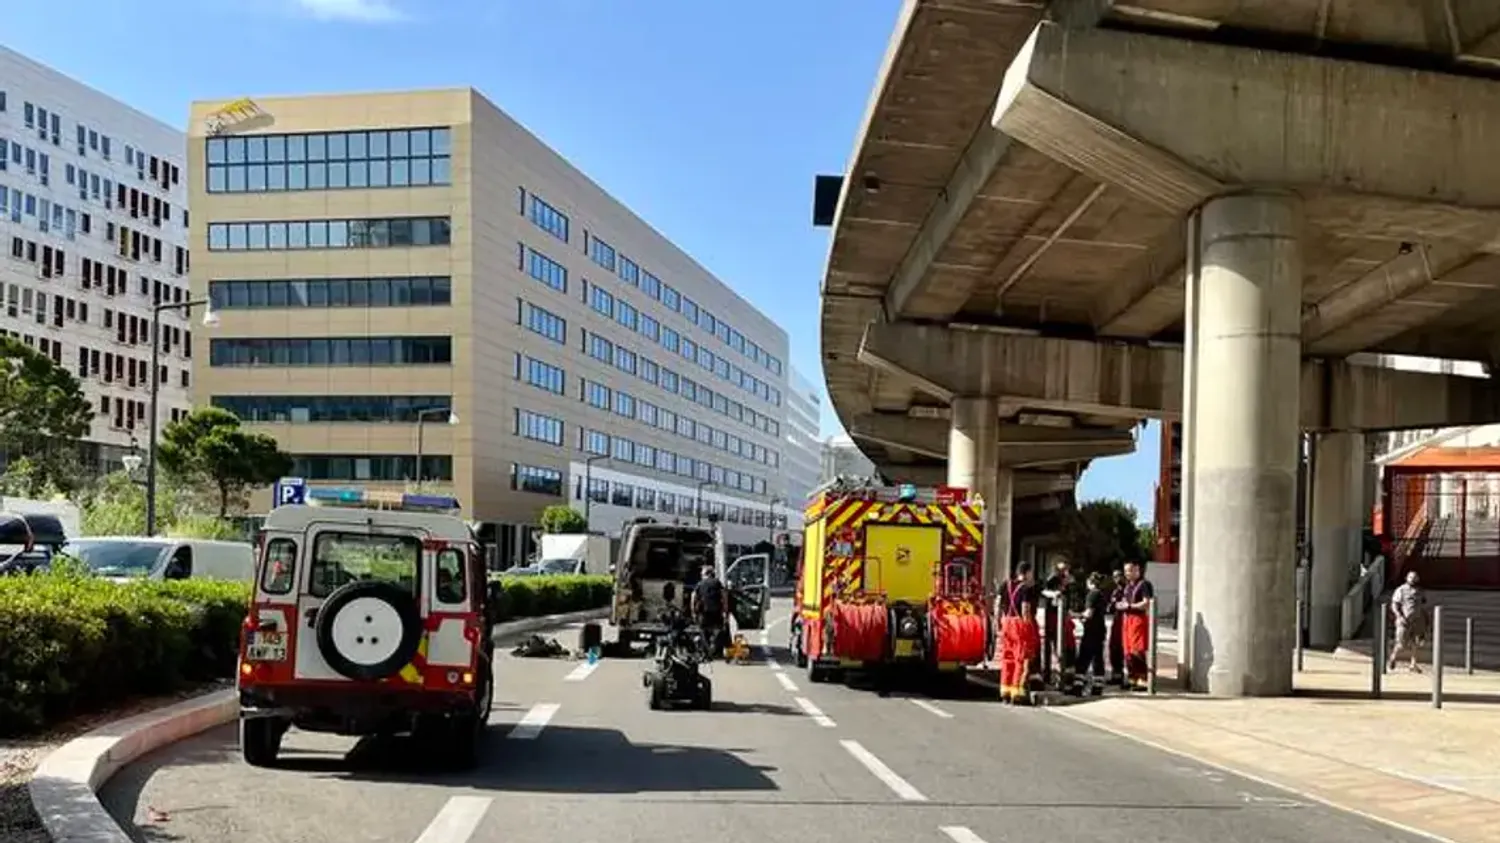 [ ALERTE INFO ] Colis suspect sous l'A55 à Marseille : tous les axes ont été rouverts